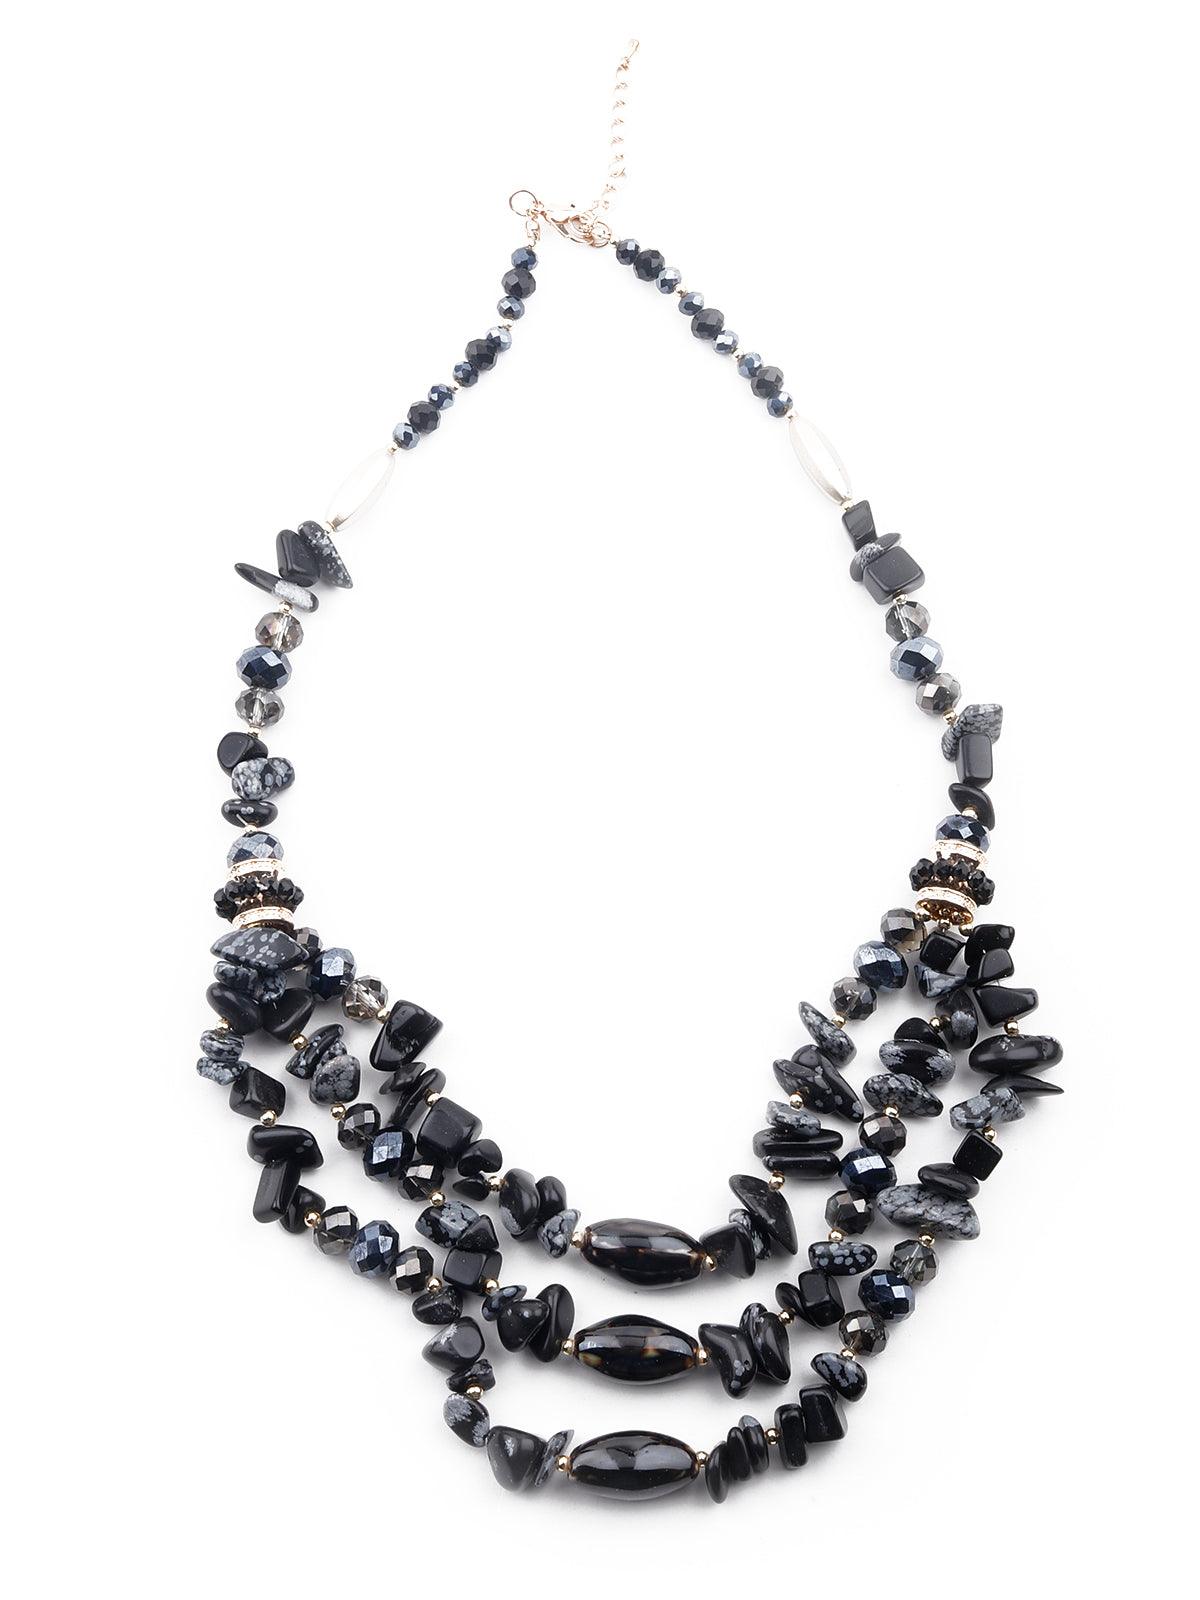 Jet black beacy layered necklace - Odette